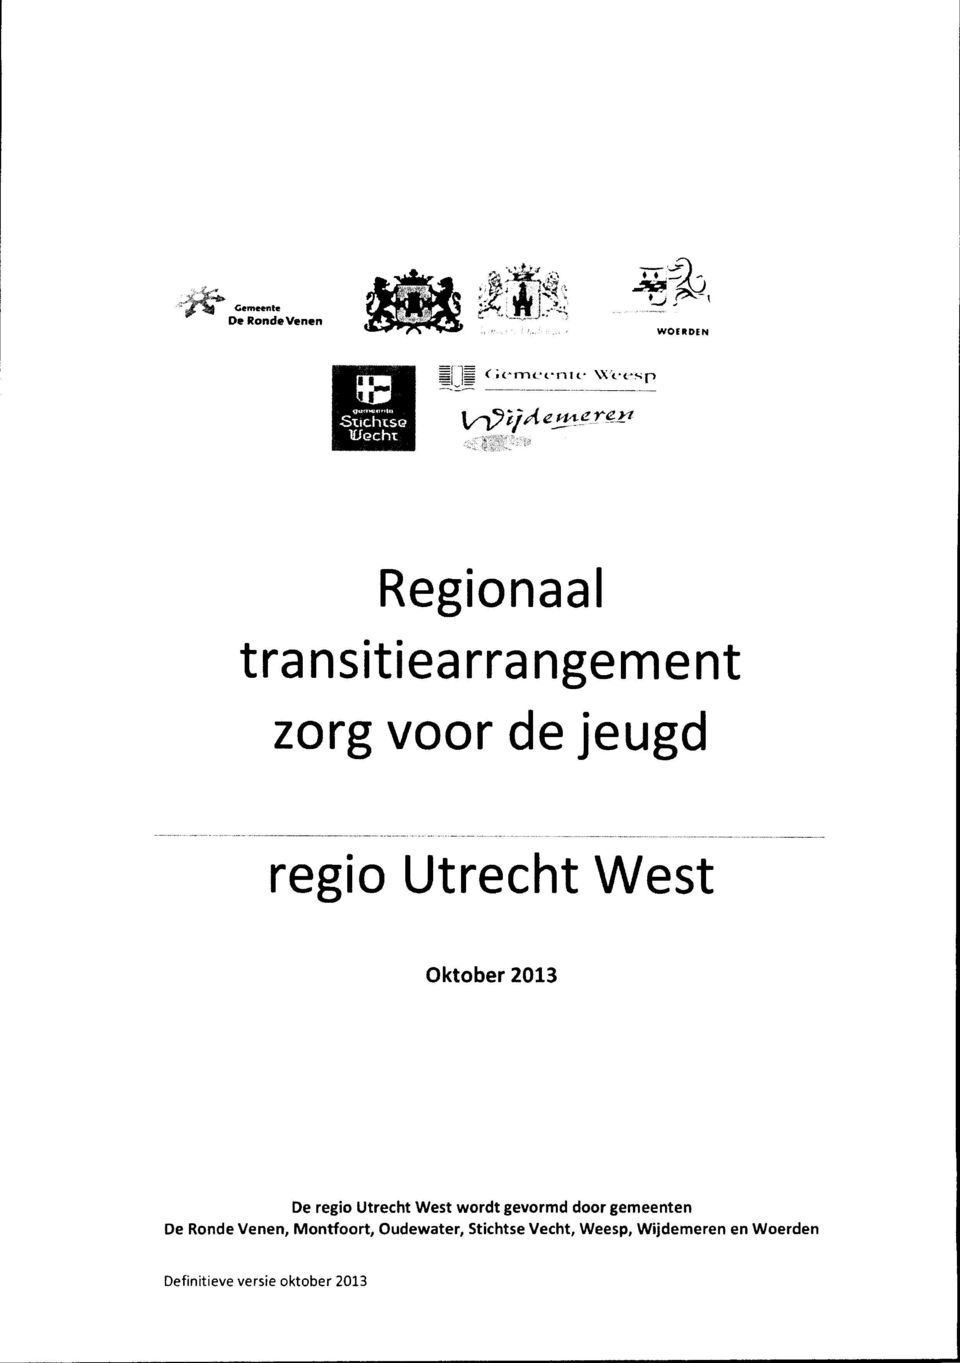 regio Utrecht West wordt gevormd door gemeenten De Ronde Venen, Montfoort,